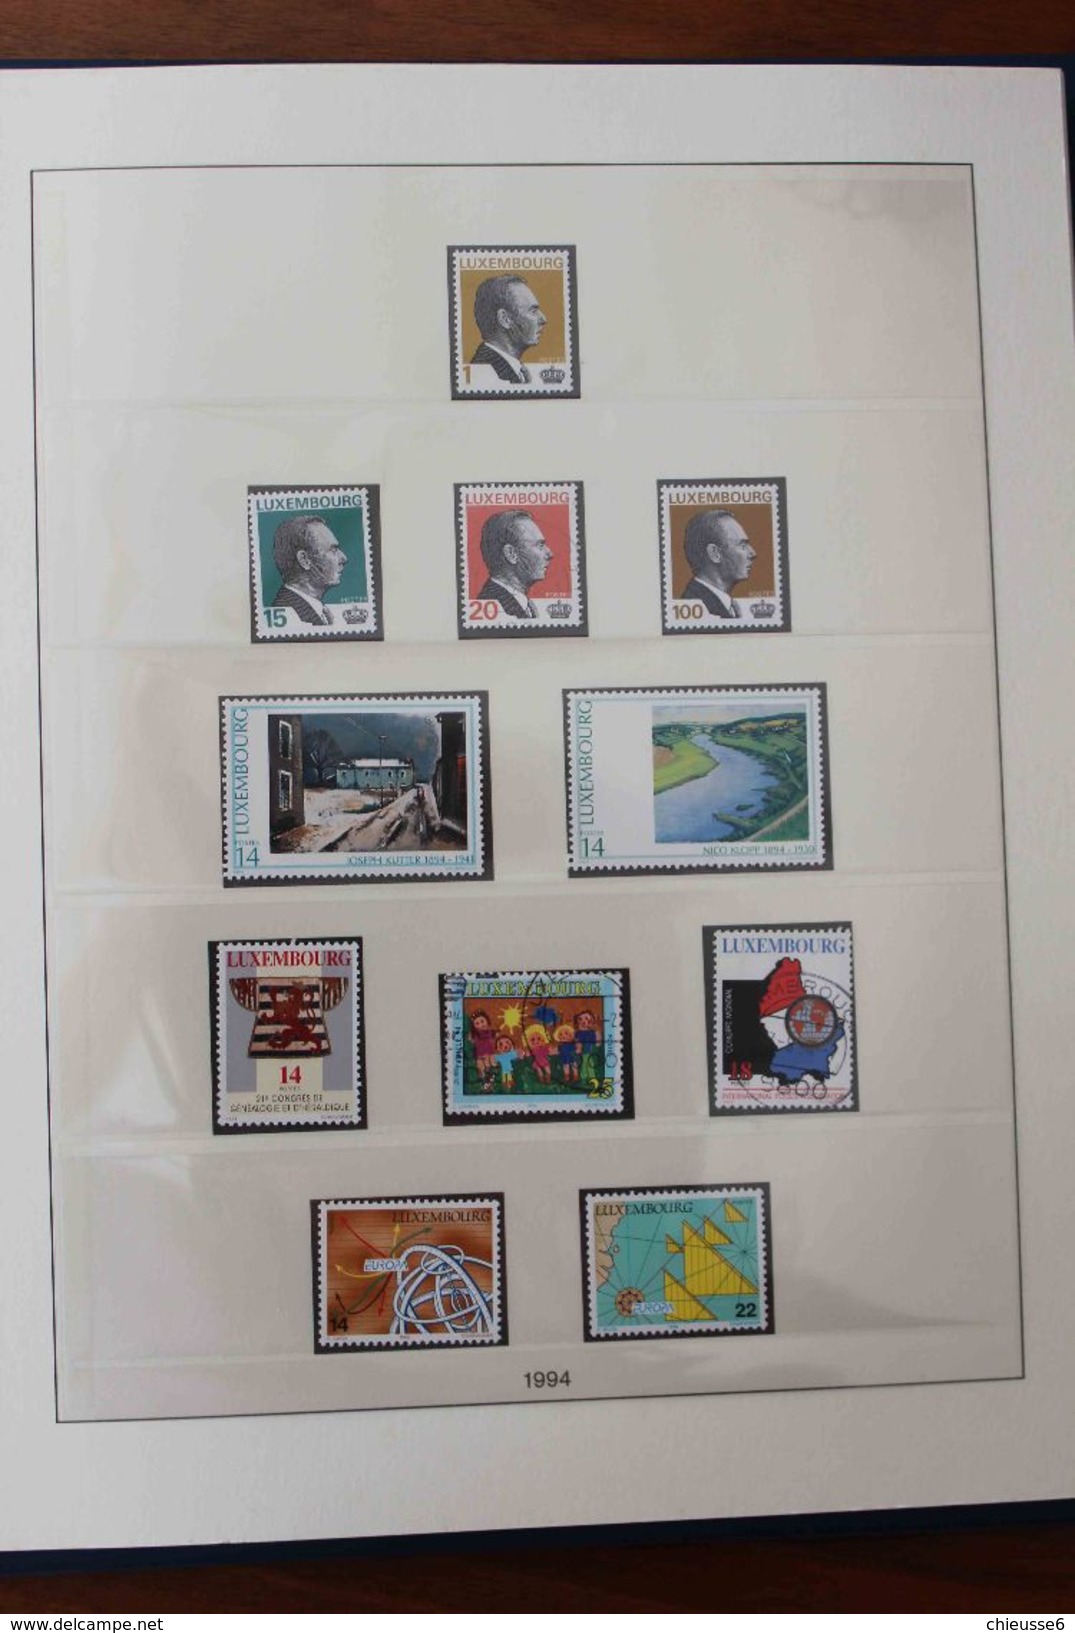 Luxembourg - Reliure Lindner - 1985 à 2004 avec timbres patiquement complète